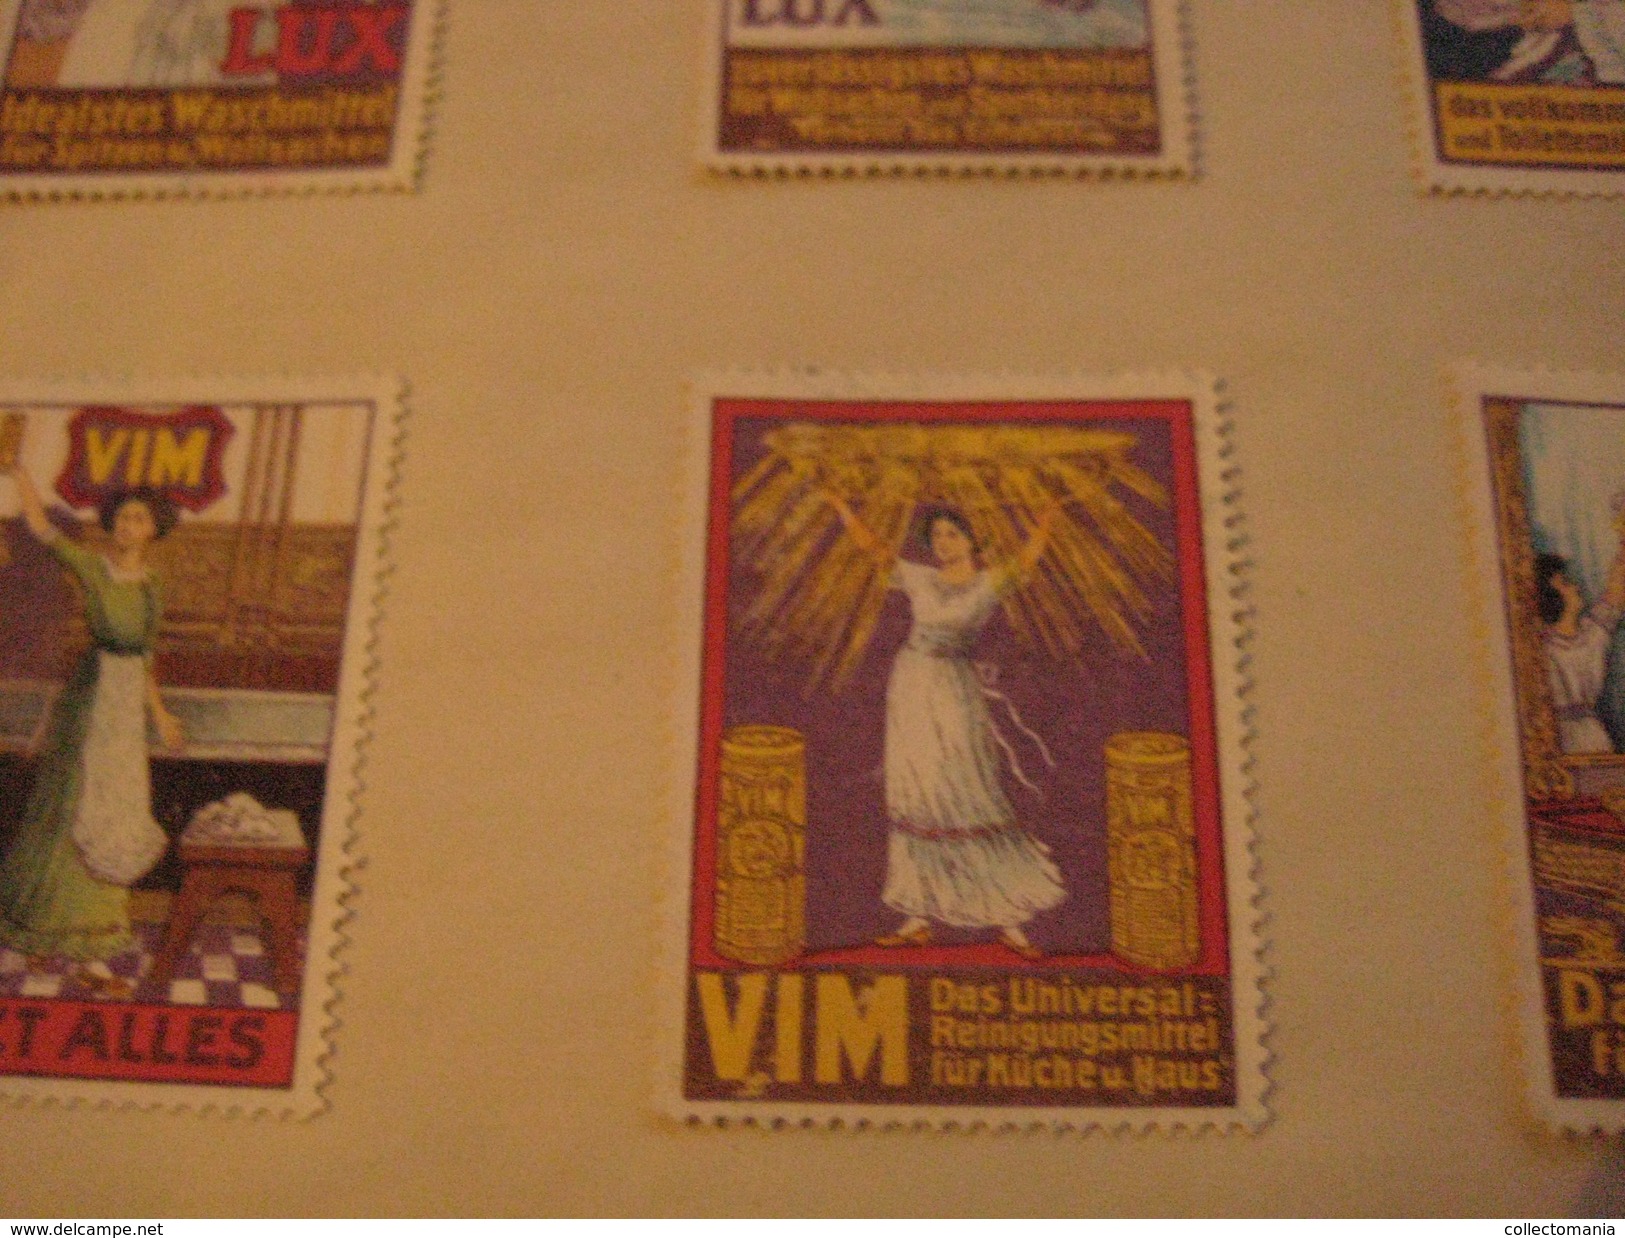 6 poster stamp advertising LUX Waschmittel PUTZmittel VIM  litho ART putzt alles